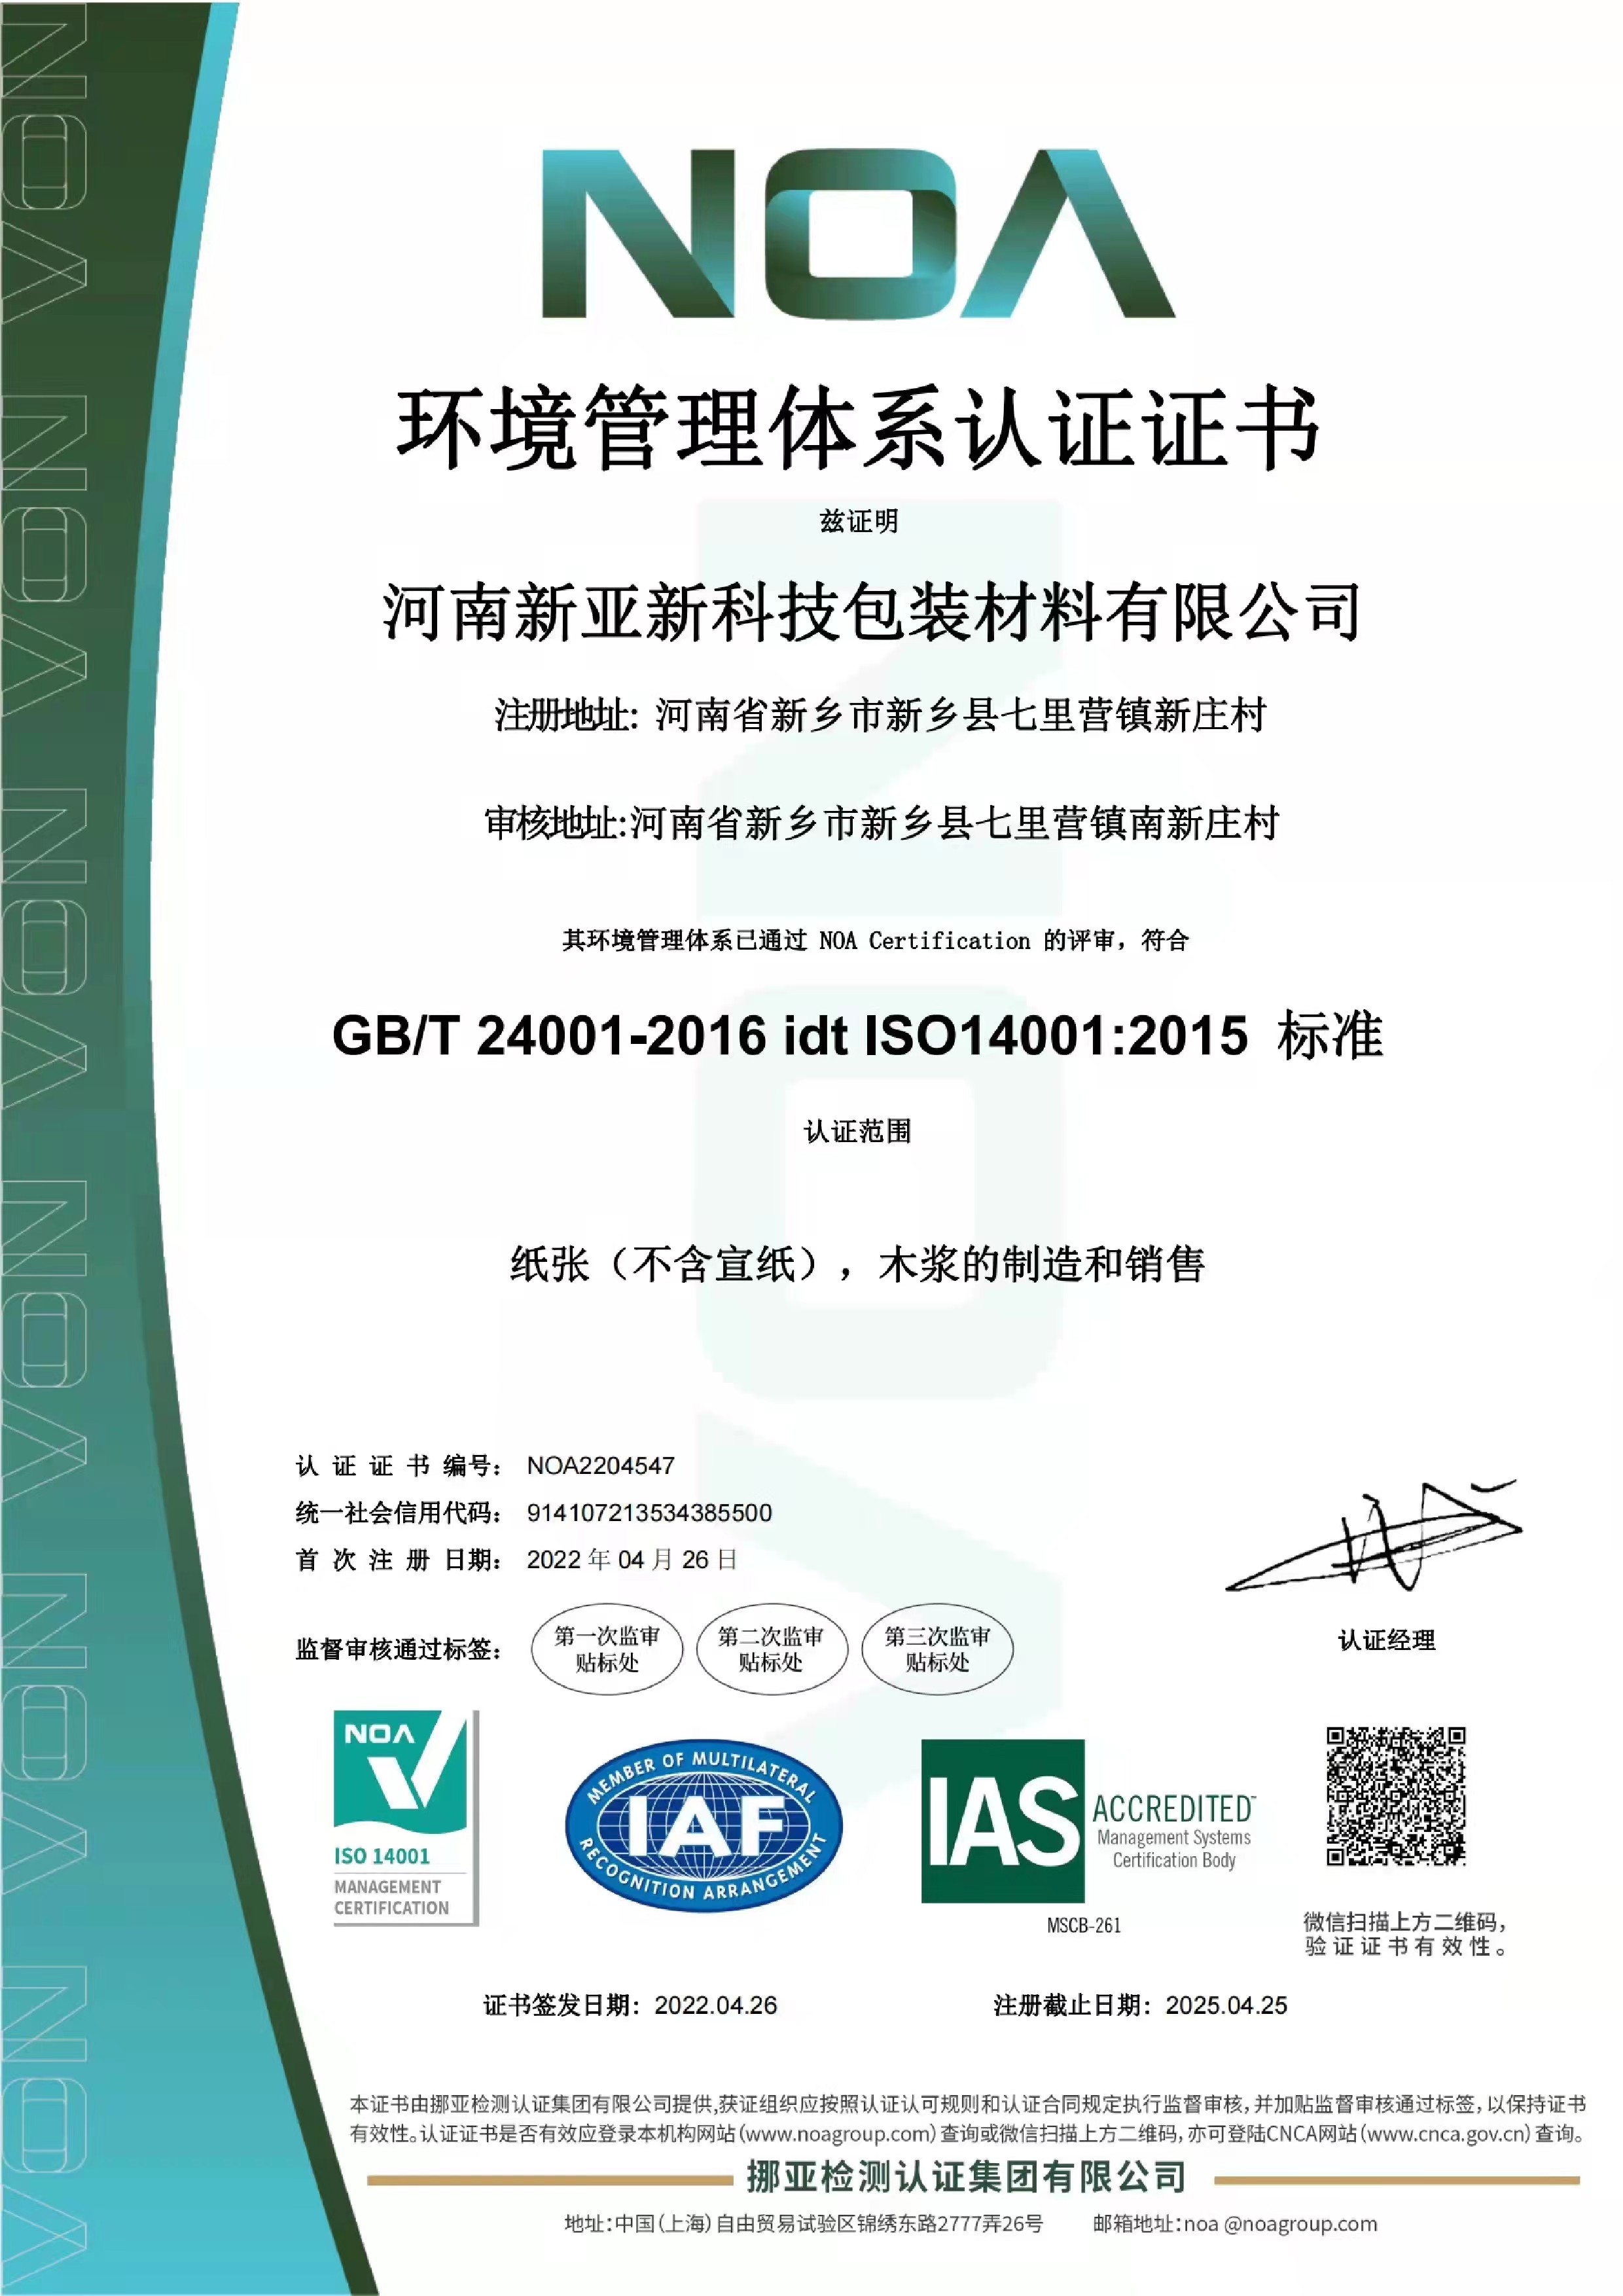 新亚新环境管理体系认证证书